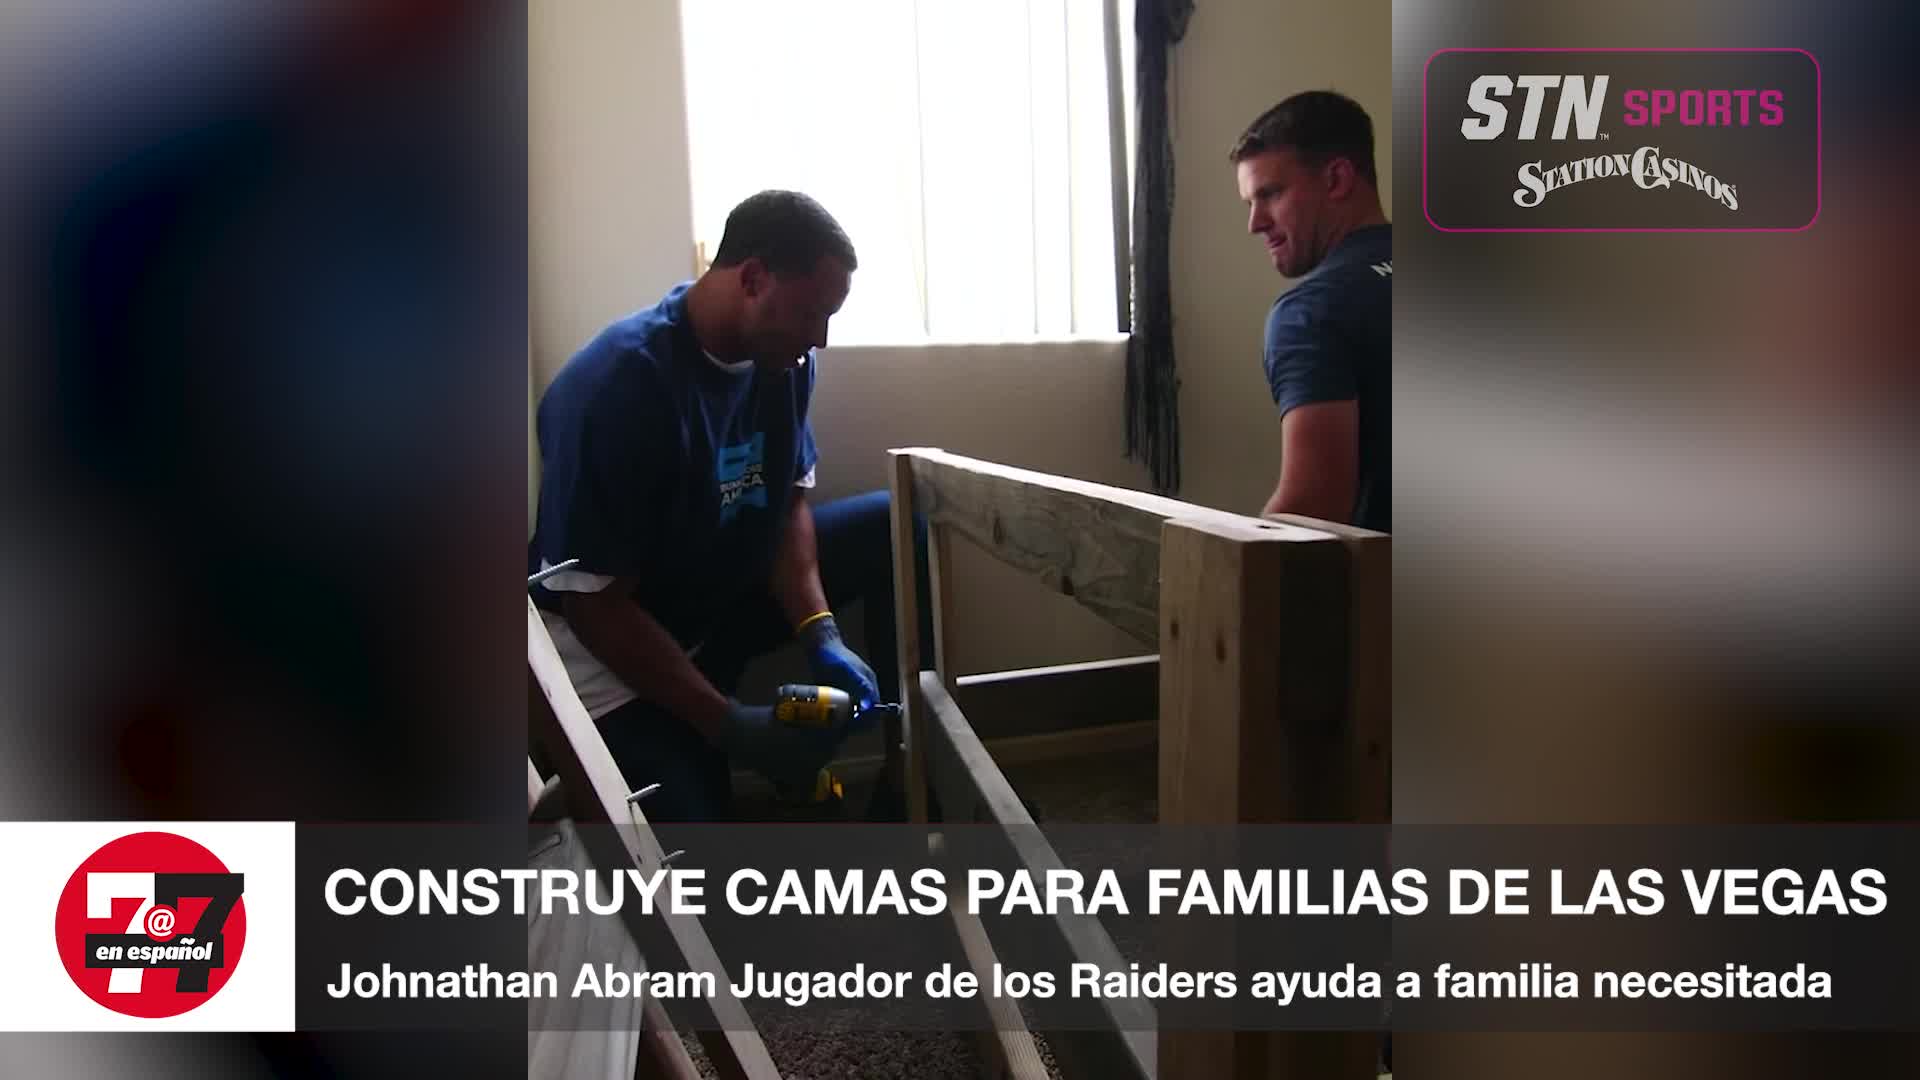 Jugador de los Raiders ayuda a familia a través de fundación ‘Jonathan’s Journey for Better’